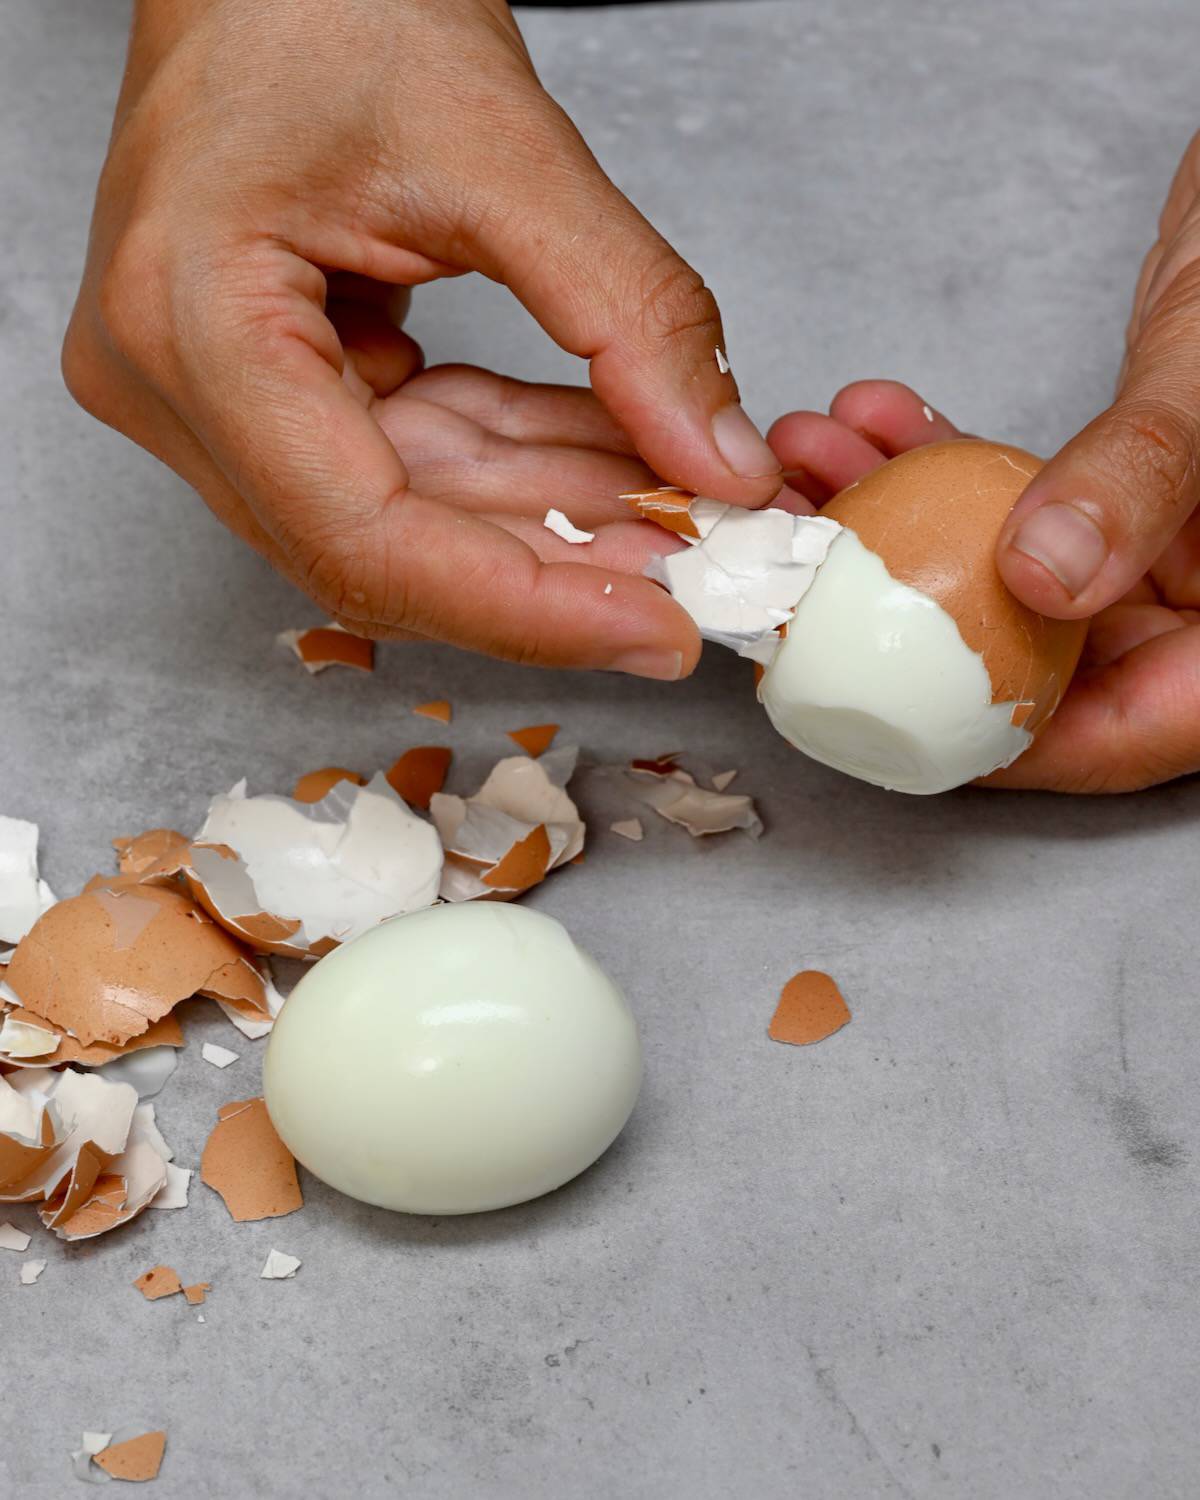 Peeling a hard-boiled egg